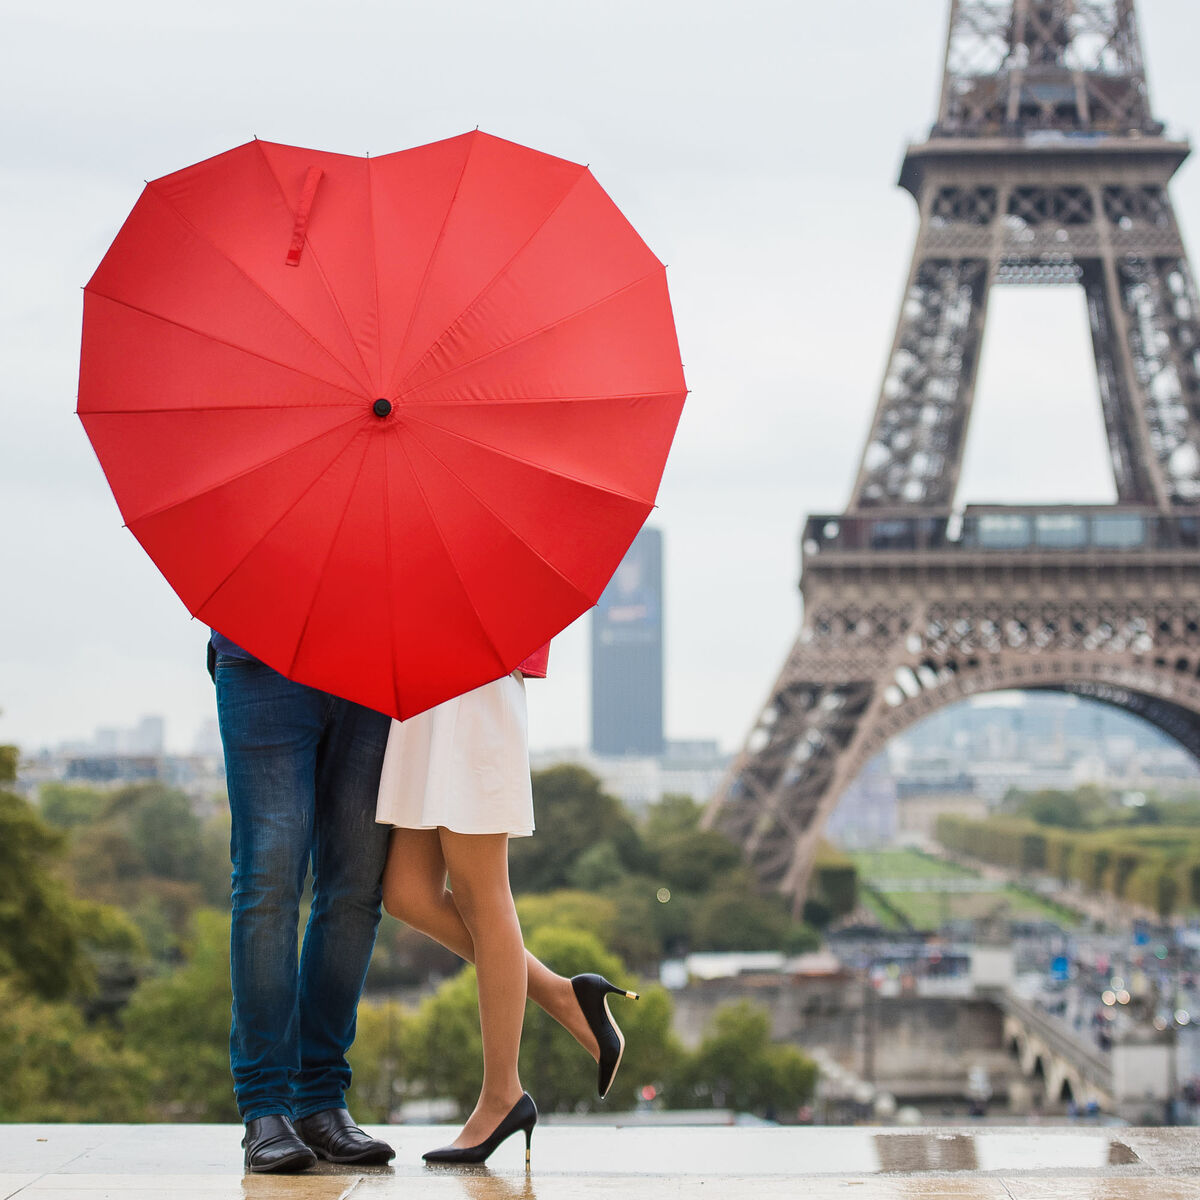 Париж романтика. Париж любовь. Париж город влюбленных. Влюбленные в Париже. Влюбленные и башня